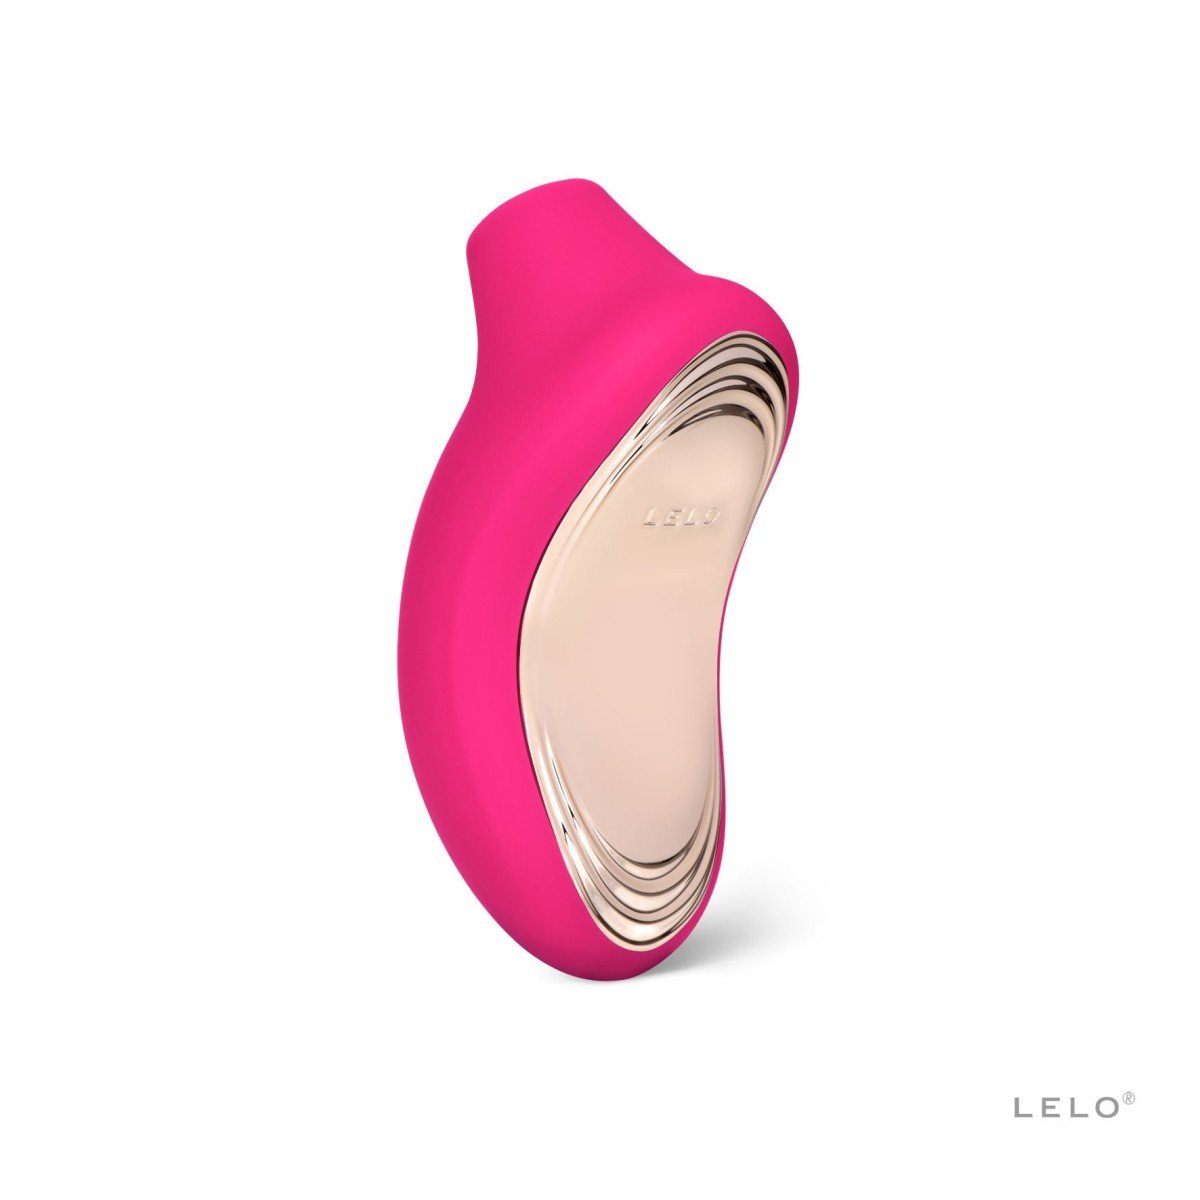 Stimulátor klitorisu LELO Sona 2 Cerise, luxusní sonický stimulátor klitorisu